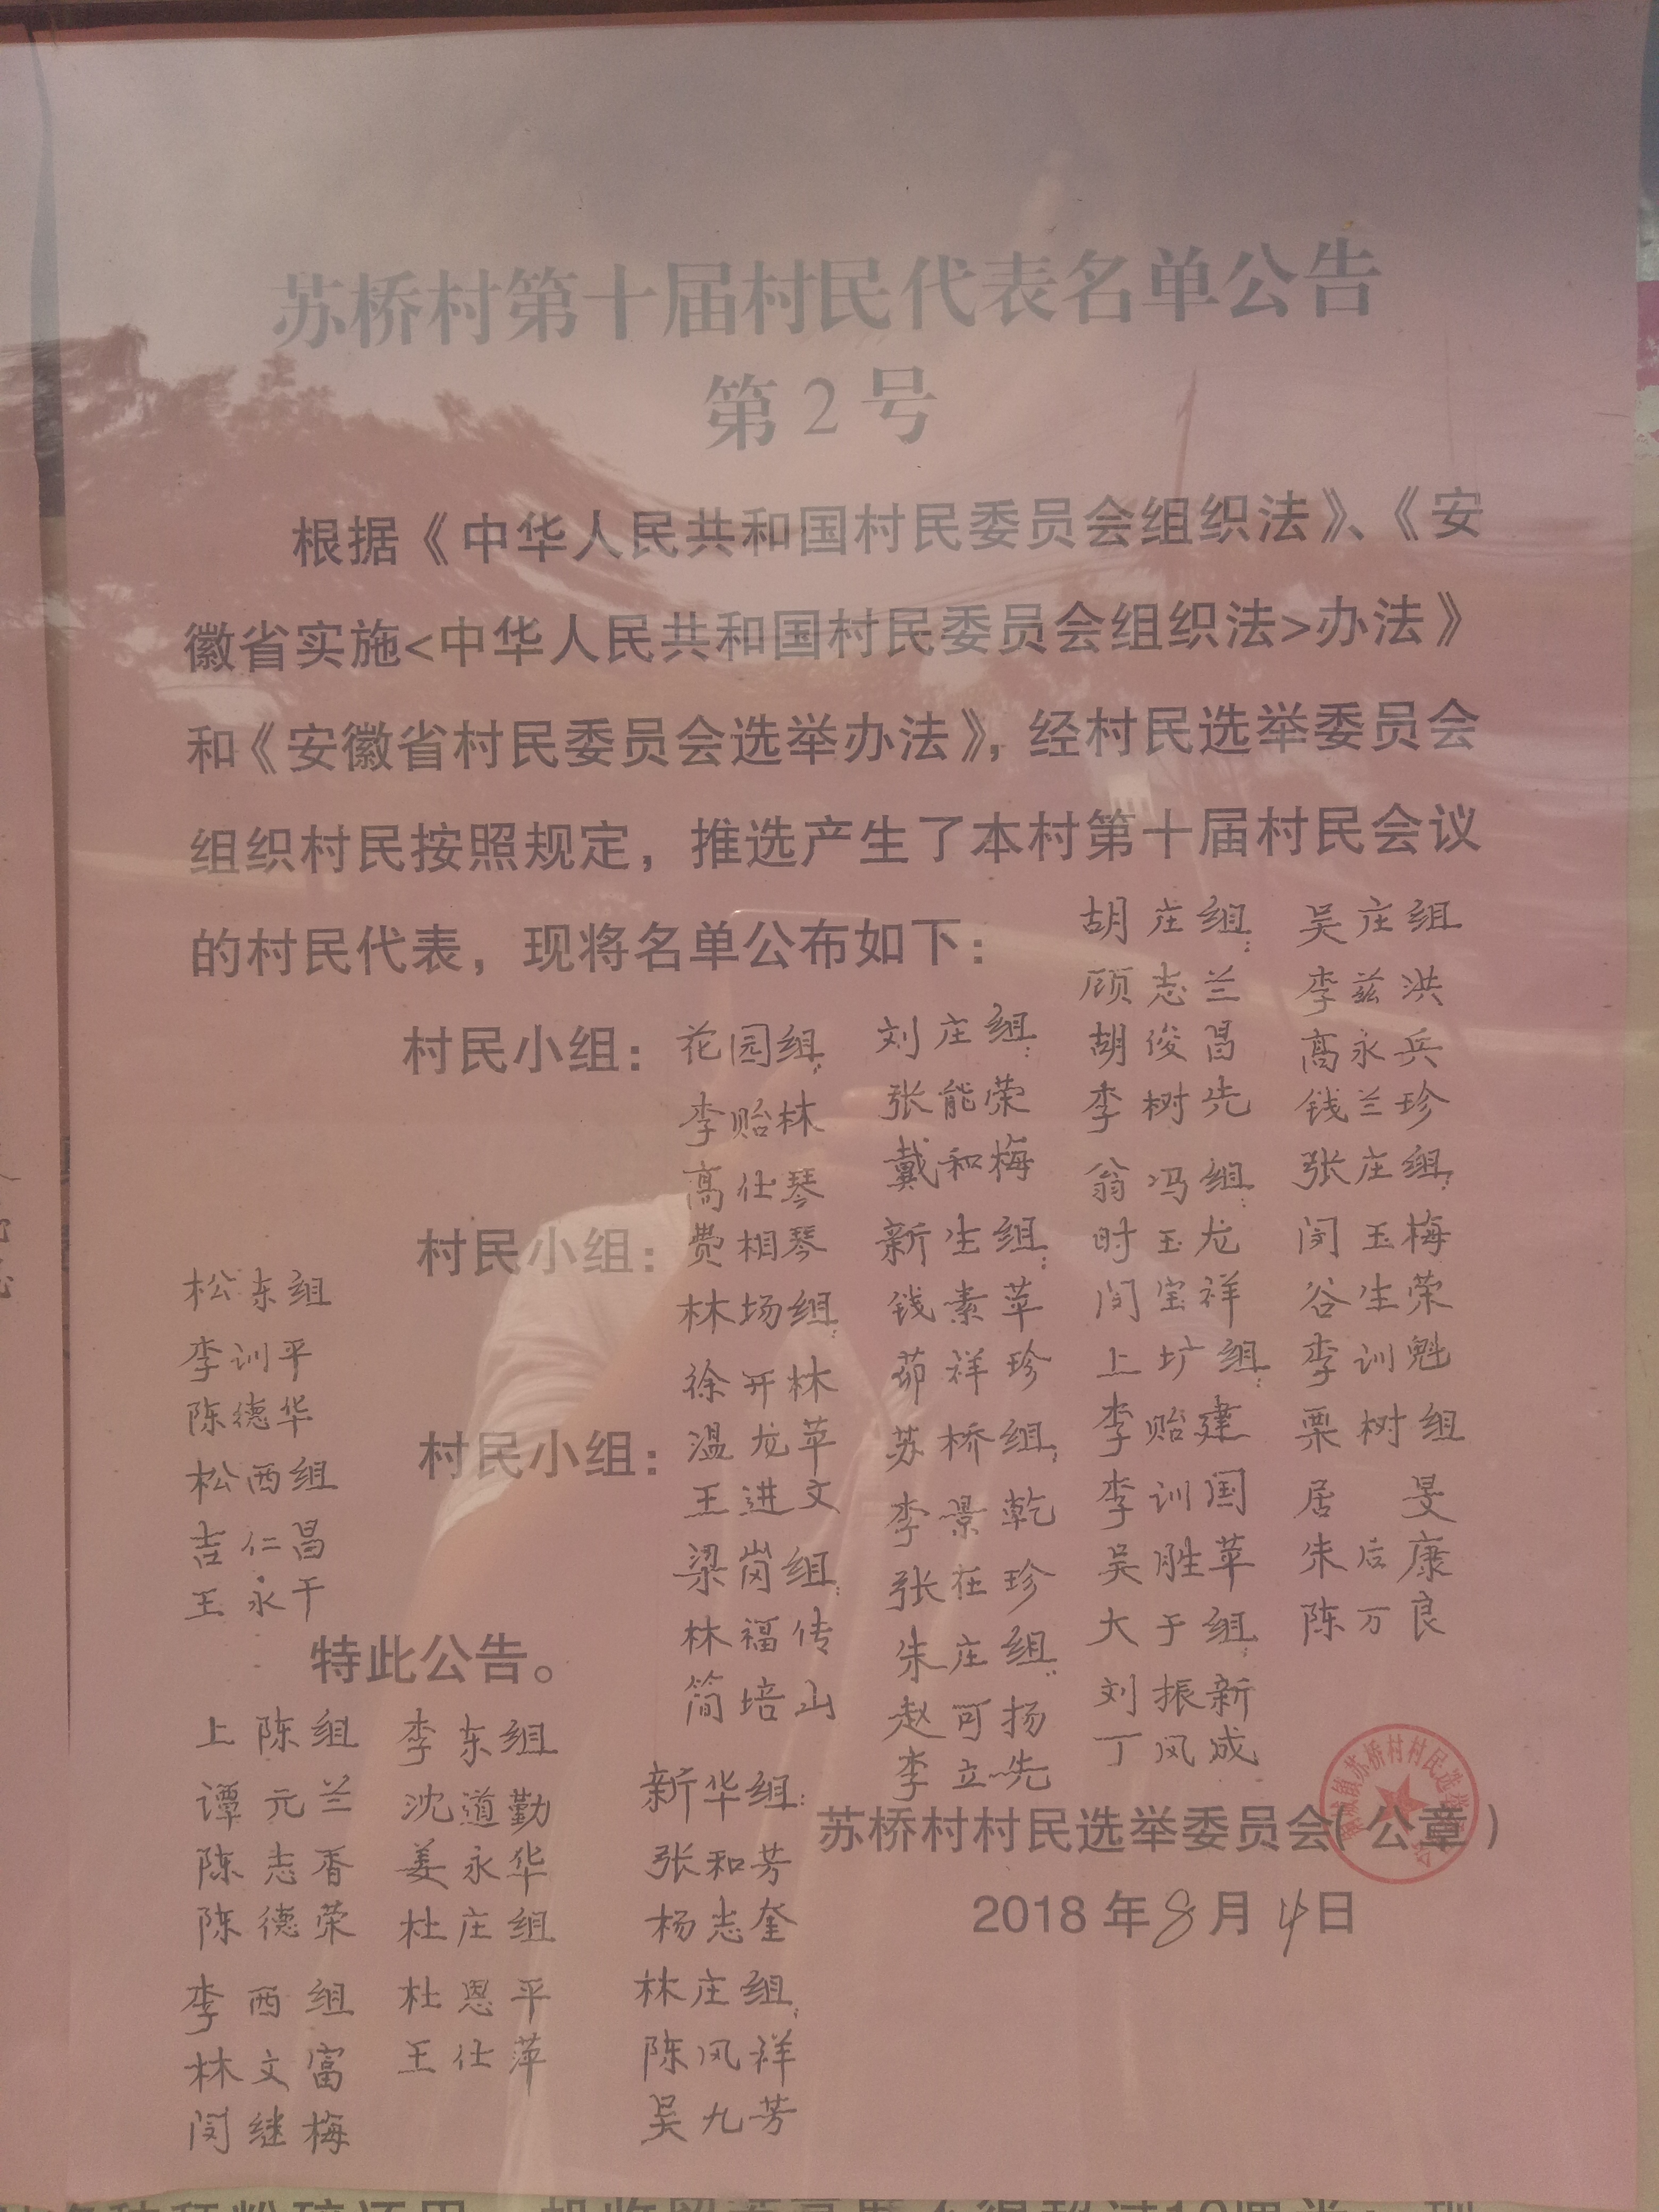 苏桥村第十届村民代表组成人员名单公示